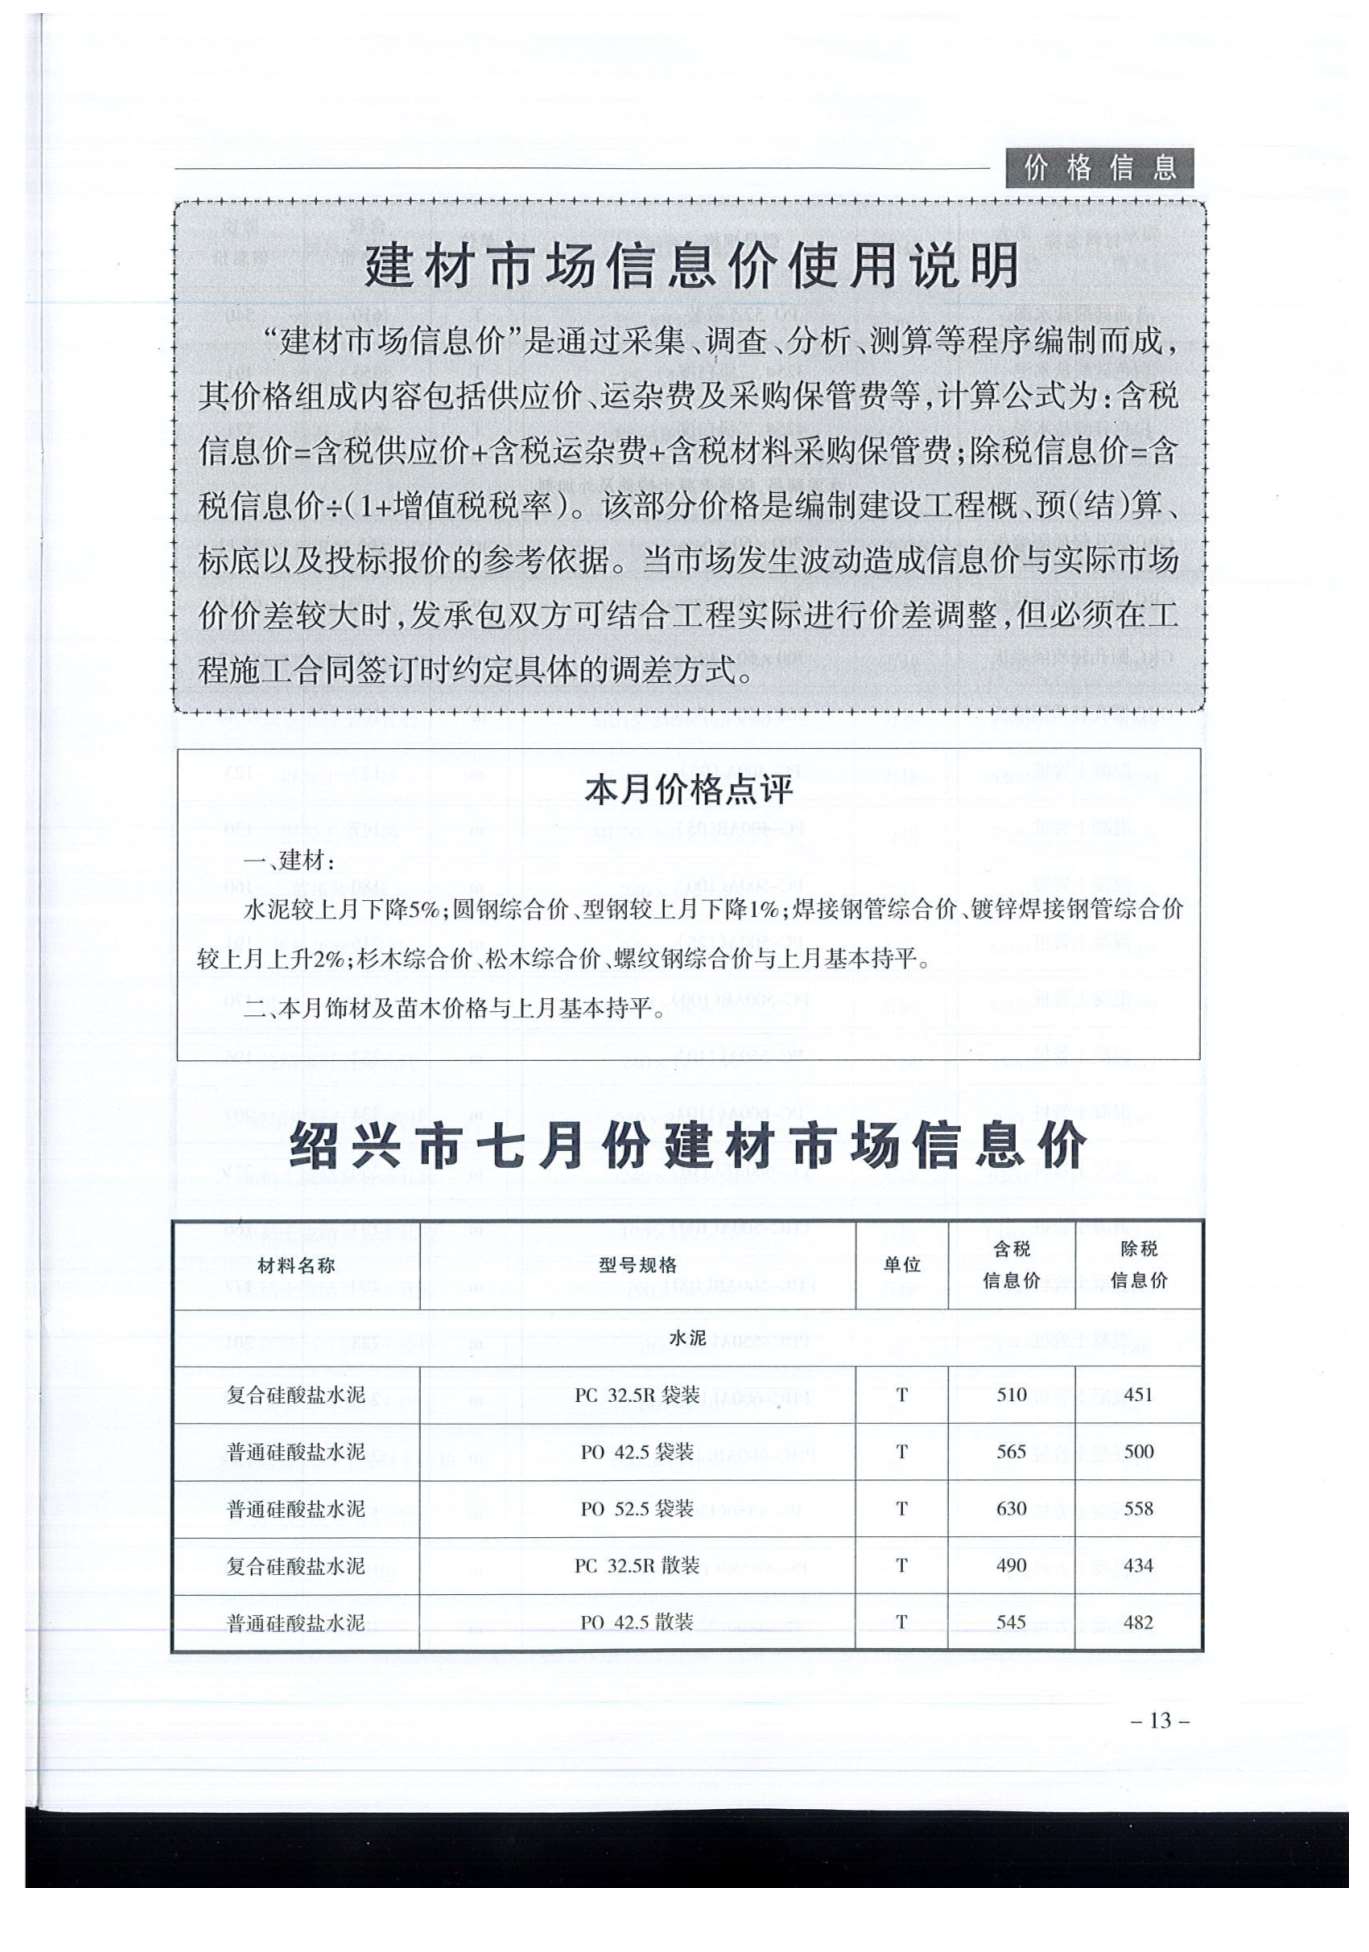 绍兴市2019年7月建设工程造价管理信息